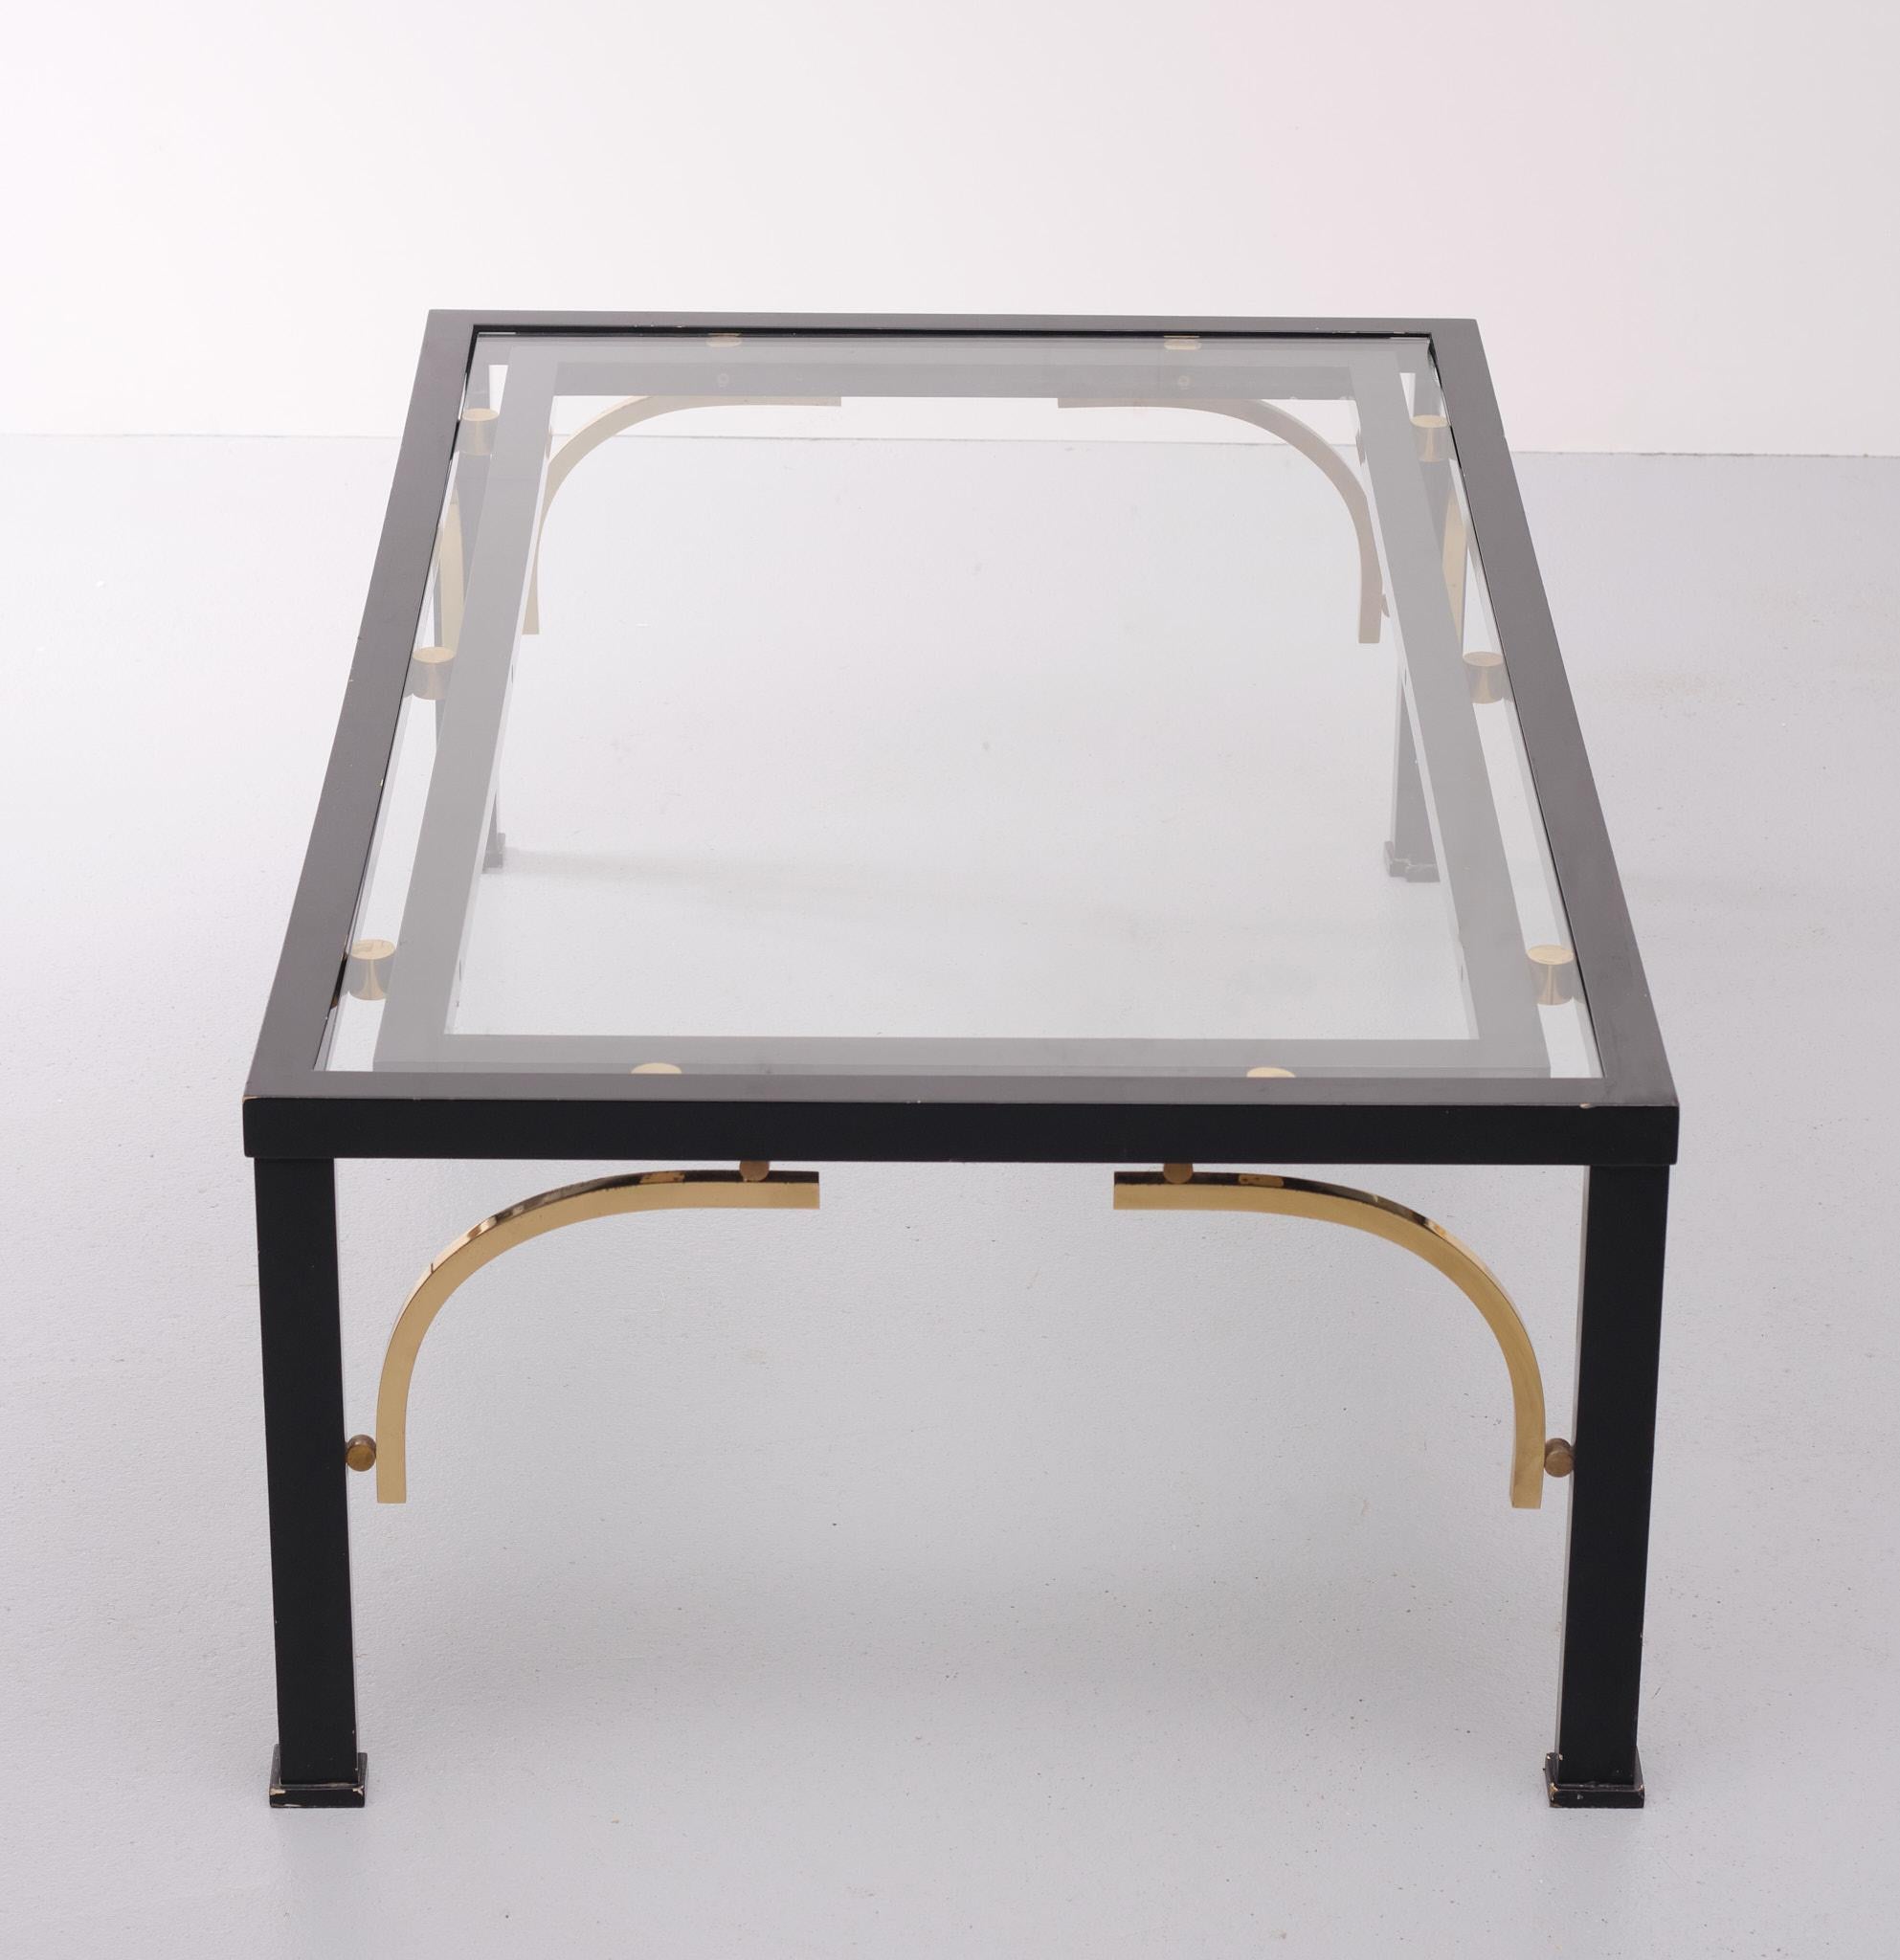 Einzigartiger Couchtisch. Hergestellt mit Holzfüßen schwarzem Metall Basis und Messing 
einzelheiten. Neue Glasplatte. Maison Jansen 1970er Jahre zugeschrieben Sehr stilvoller Tisch.